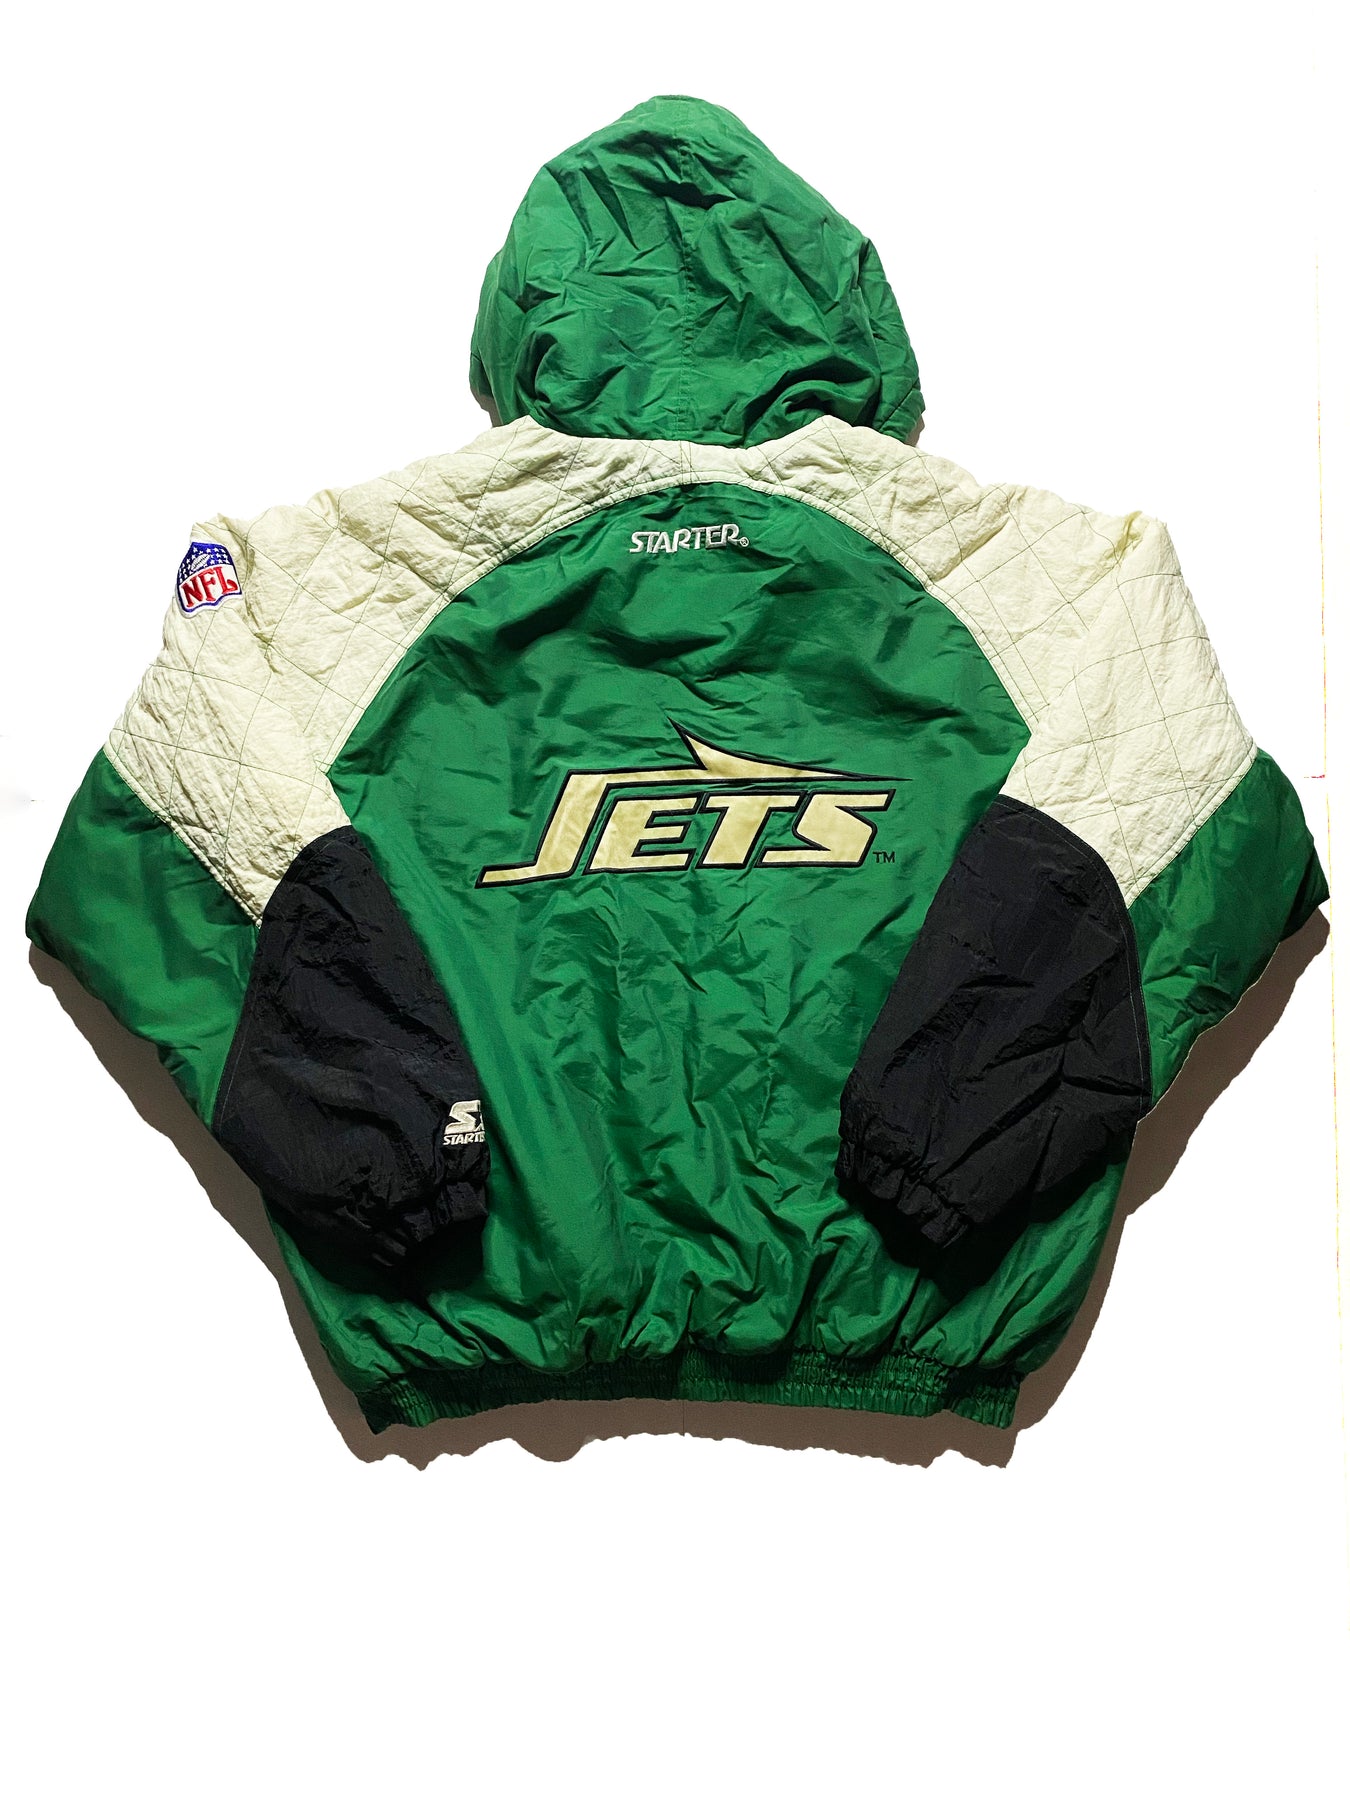 jets starter jacket 90s